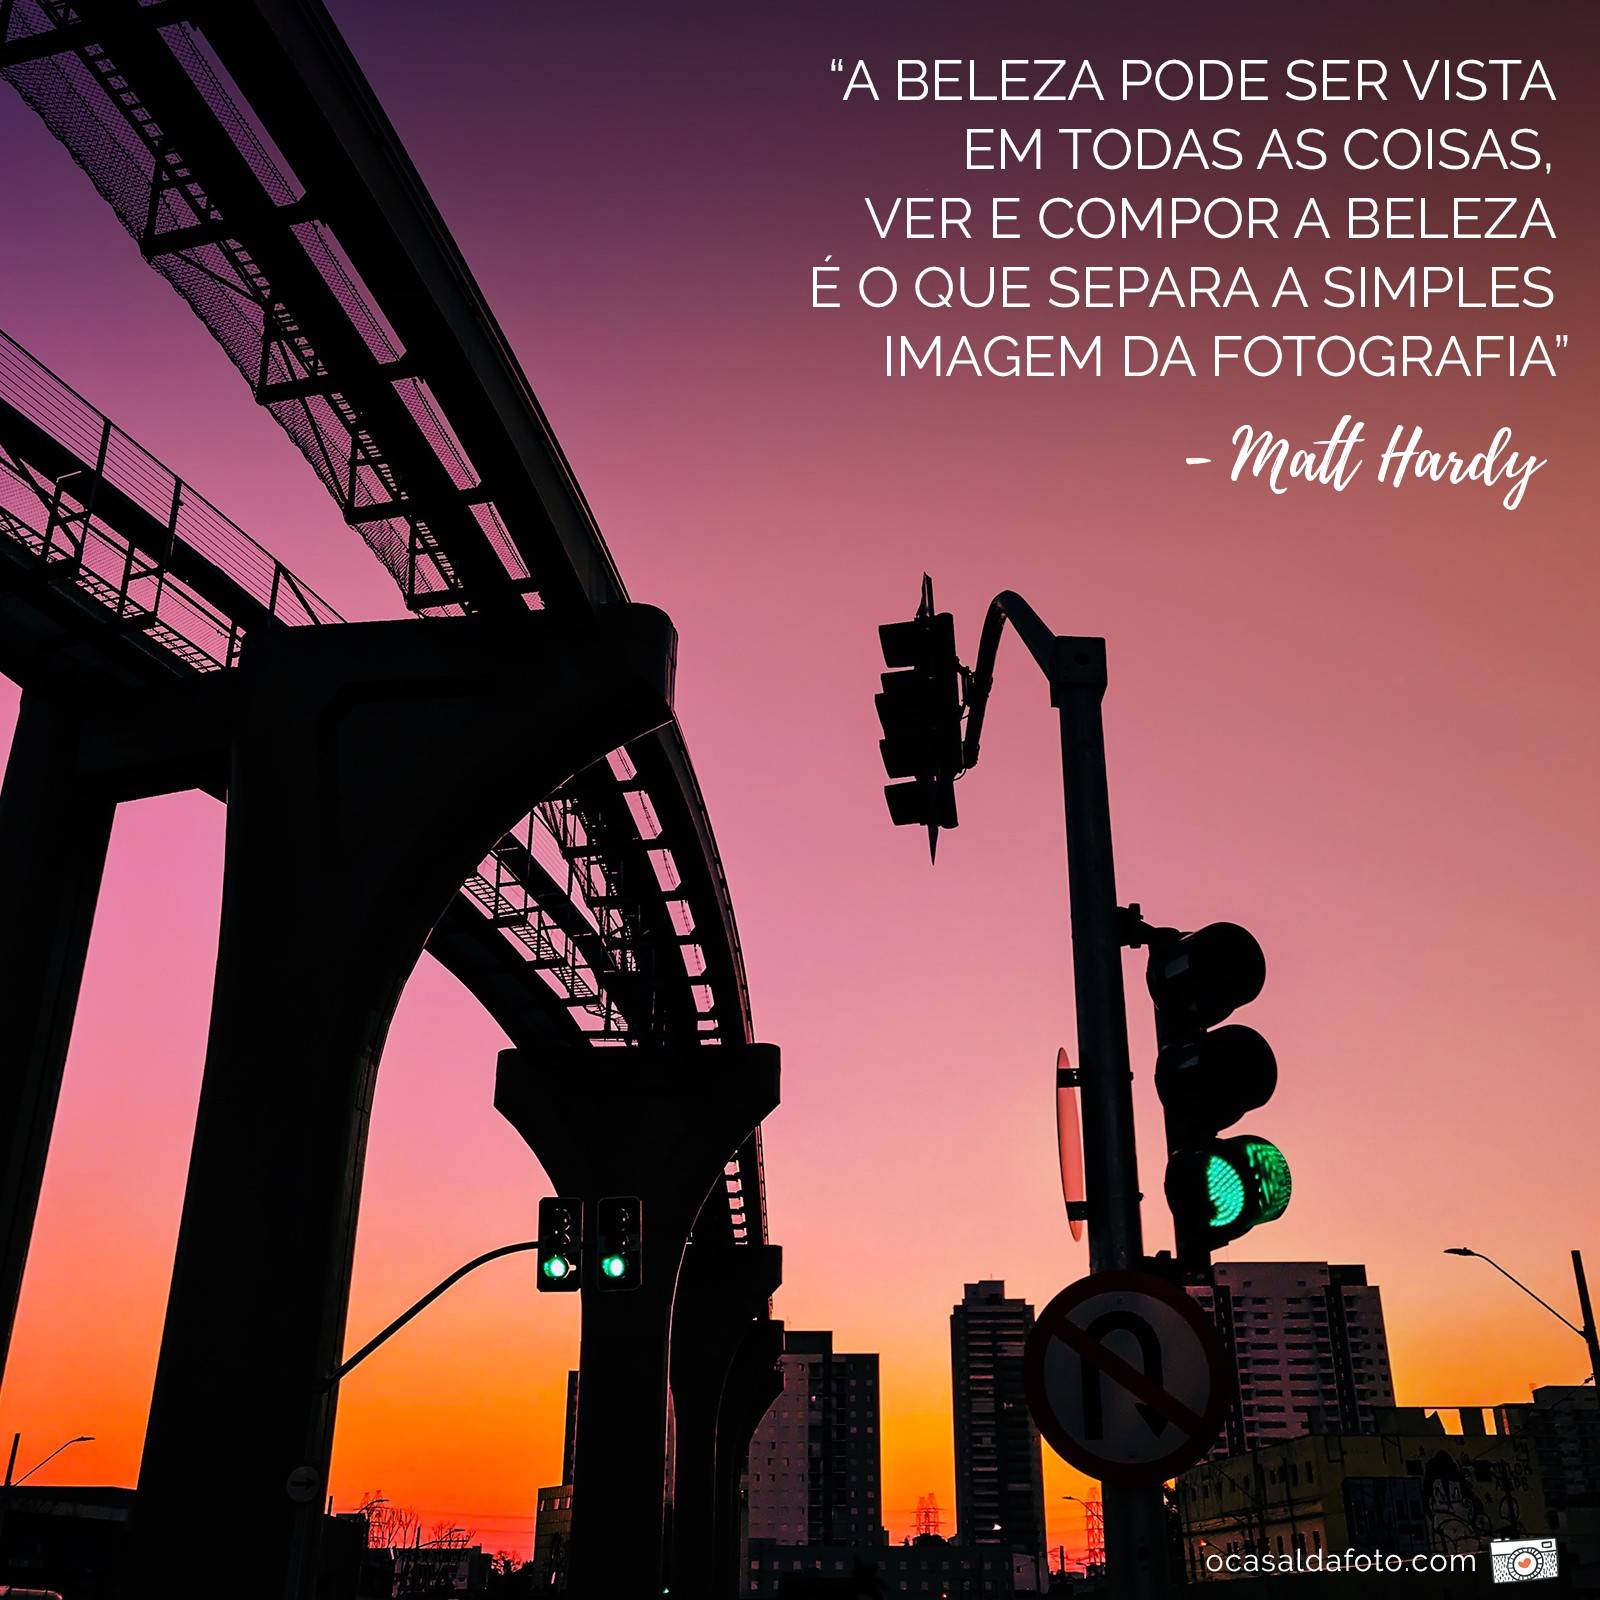 três frases inspiradoras em português brasileiro. tradução - se você não  pode fazer tudo, faça o que puder - você é capaz de fazer o que quiser -  faça o bem, não